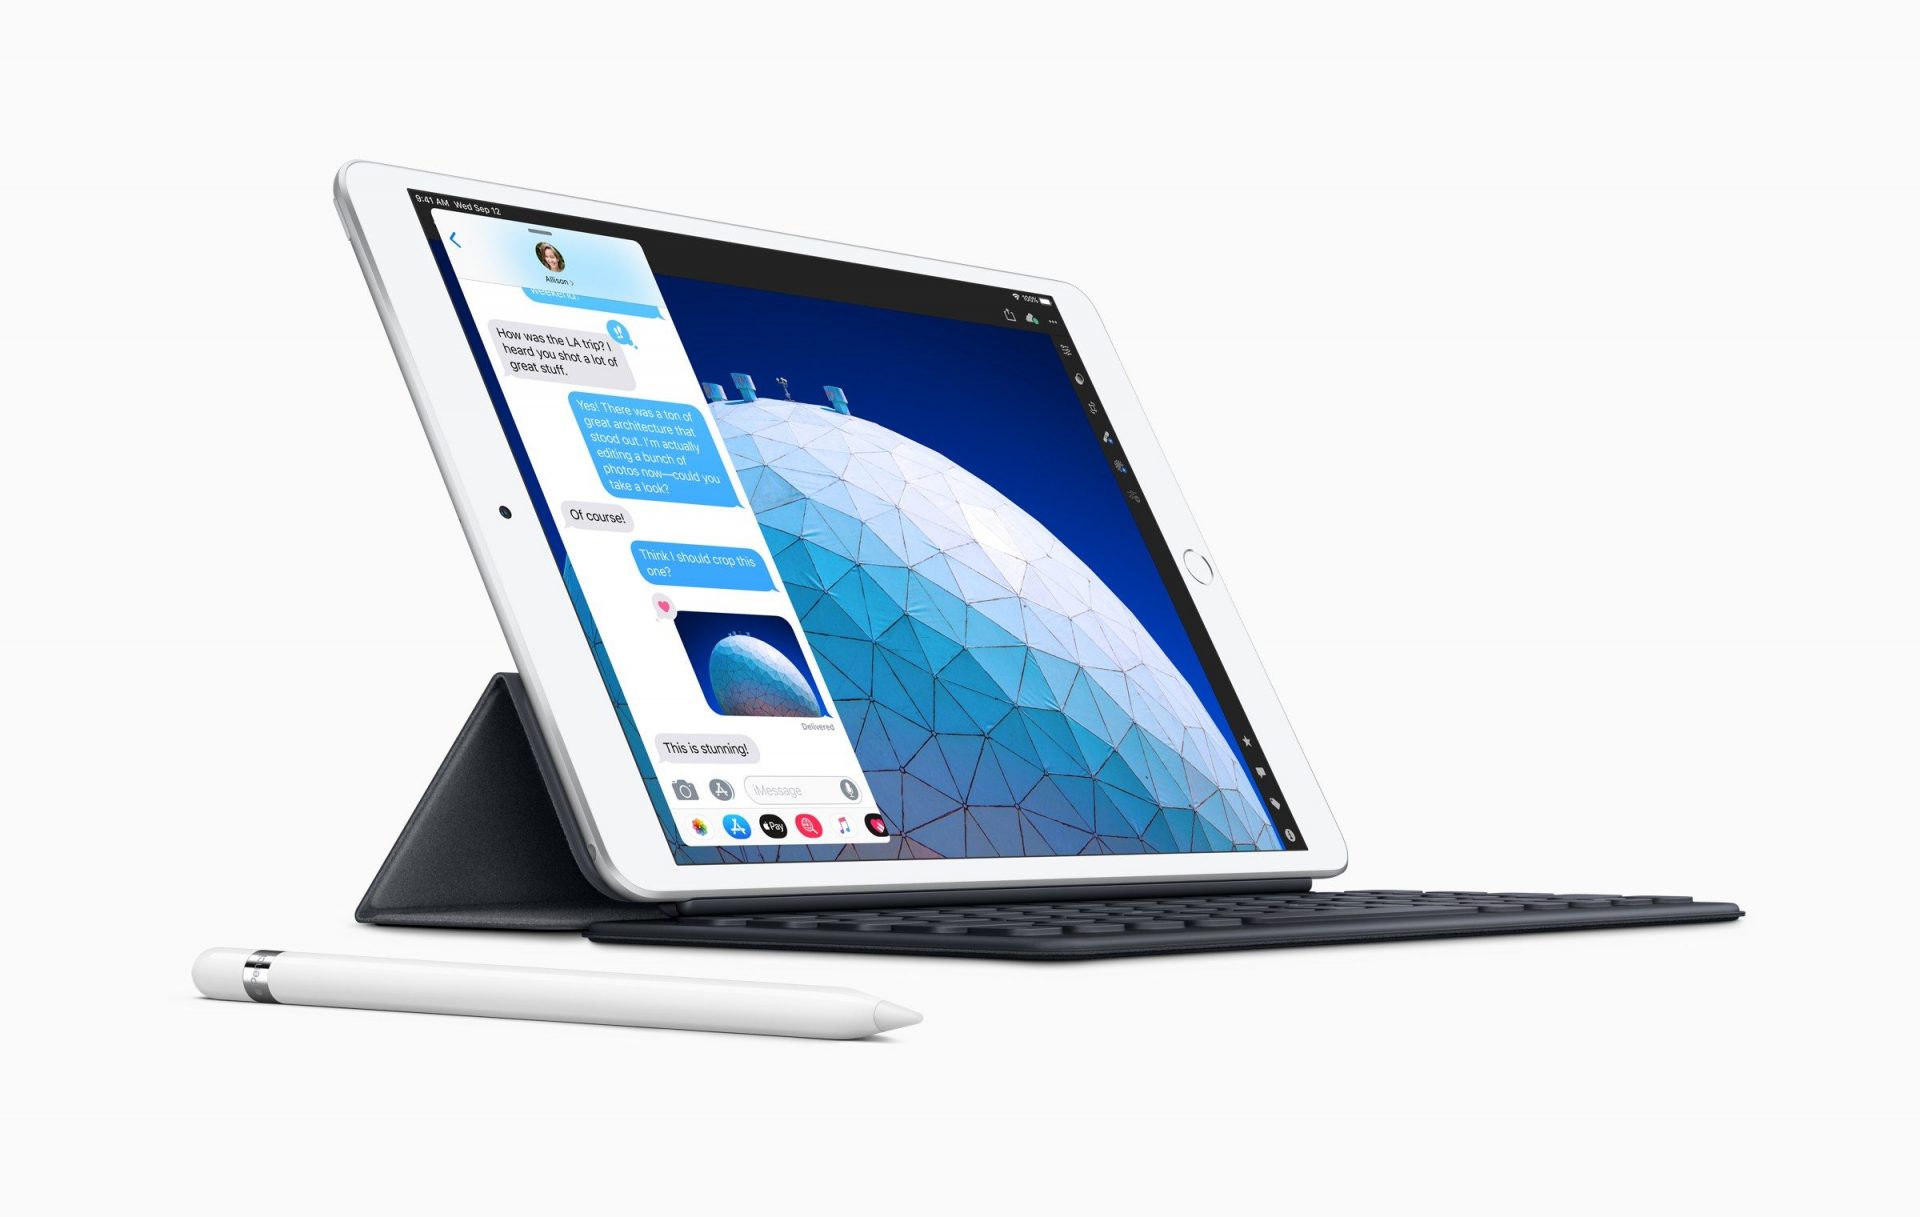 Apple วางจำหน่าย iPad Air และ iPad mini รุ่นใหม่แบบ Cellular หรือใส่ซิมแล้ว!